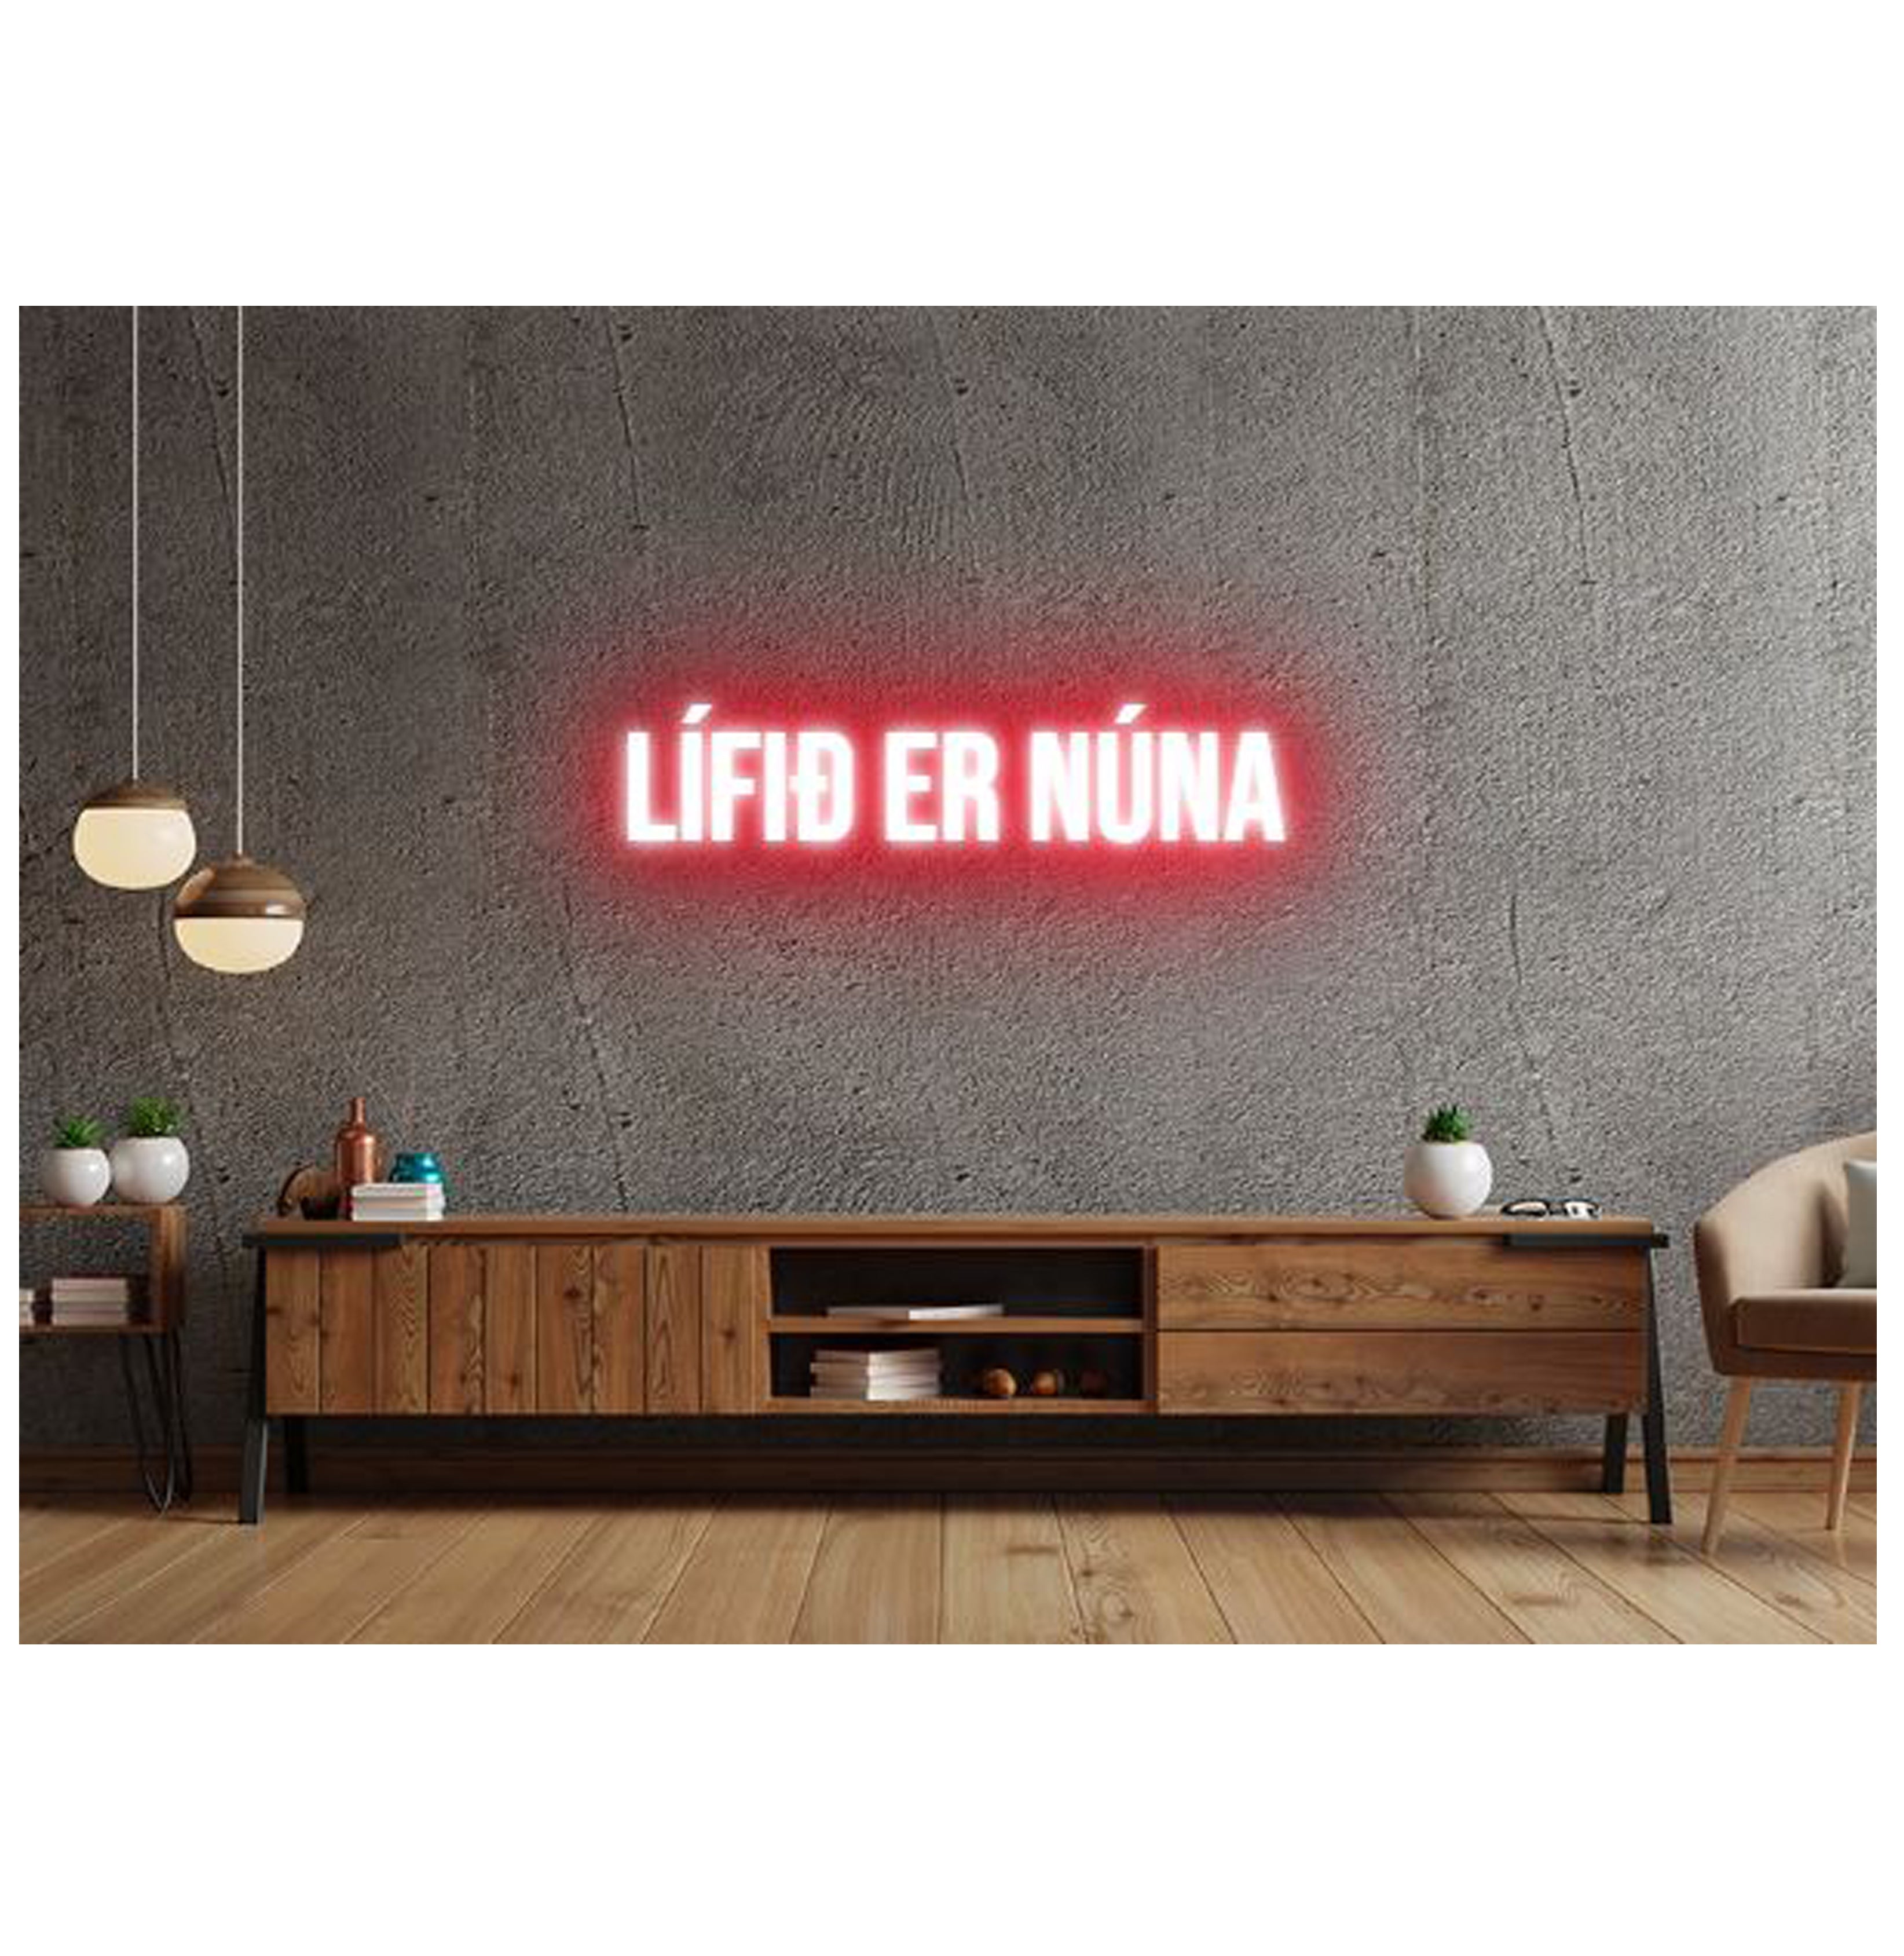 Lífið er núna - Neonskilti